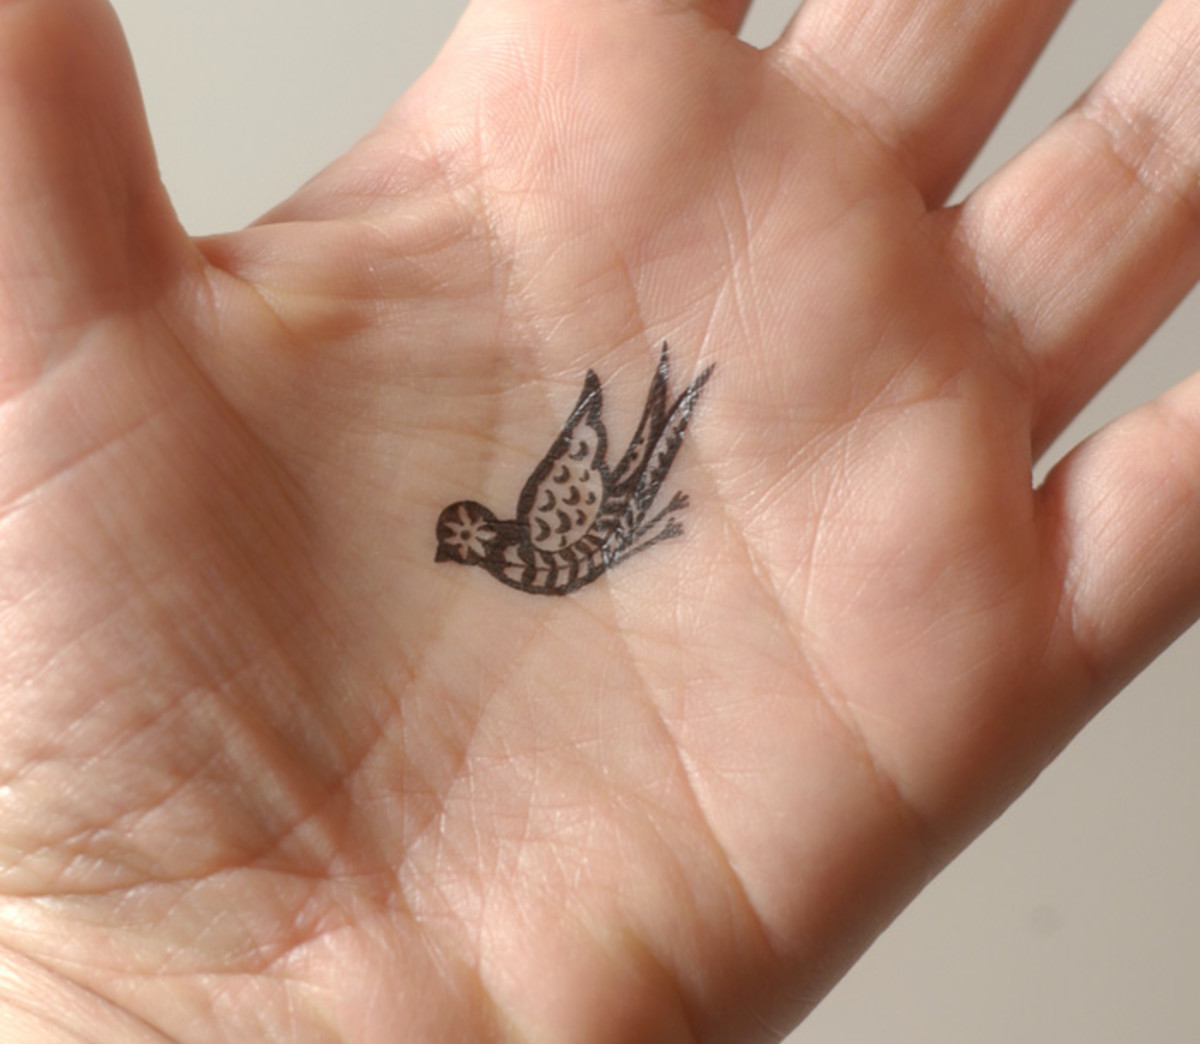 Ez a kézi tetoválás szépnek tűnik, de a vonalak kiállják az idő próbáját?